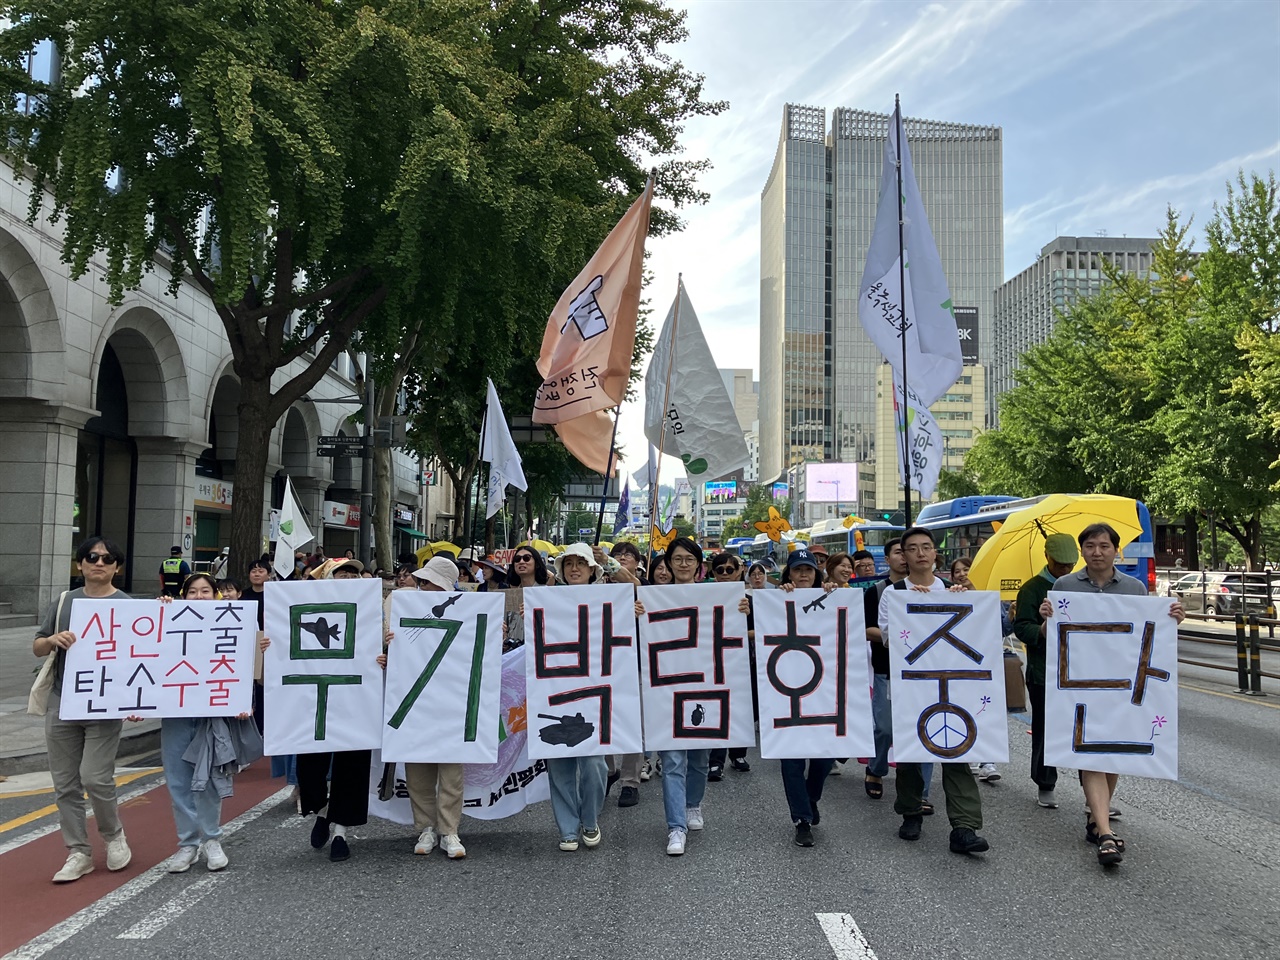 평화활동가들이 지난 9.23 기후행진에서 “평화파괴, 기후파괴 무기박람회 중단”이라고 쓰인 피켓을 들고 행진하고 있다.